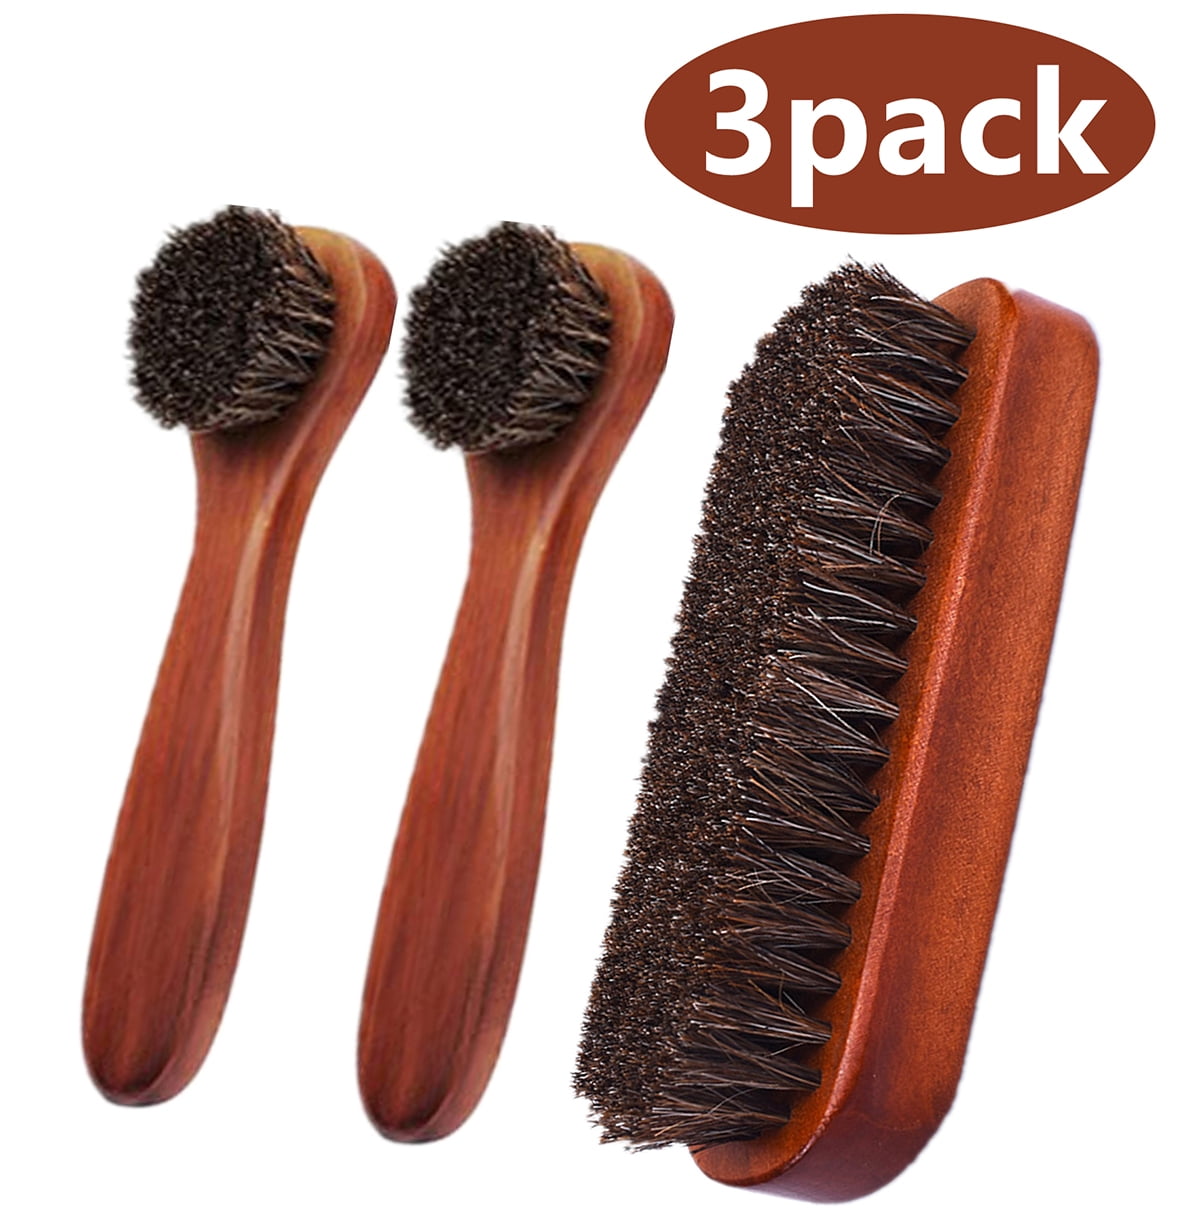 3 Pack Kiwi 100% Horsehair Shine Brush 